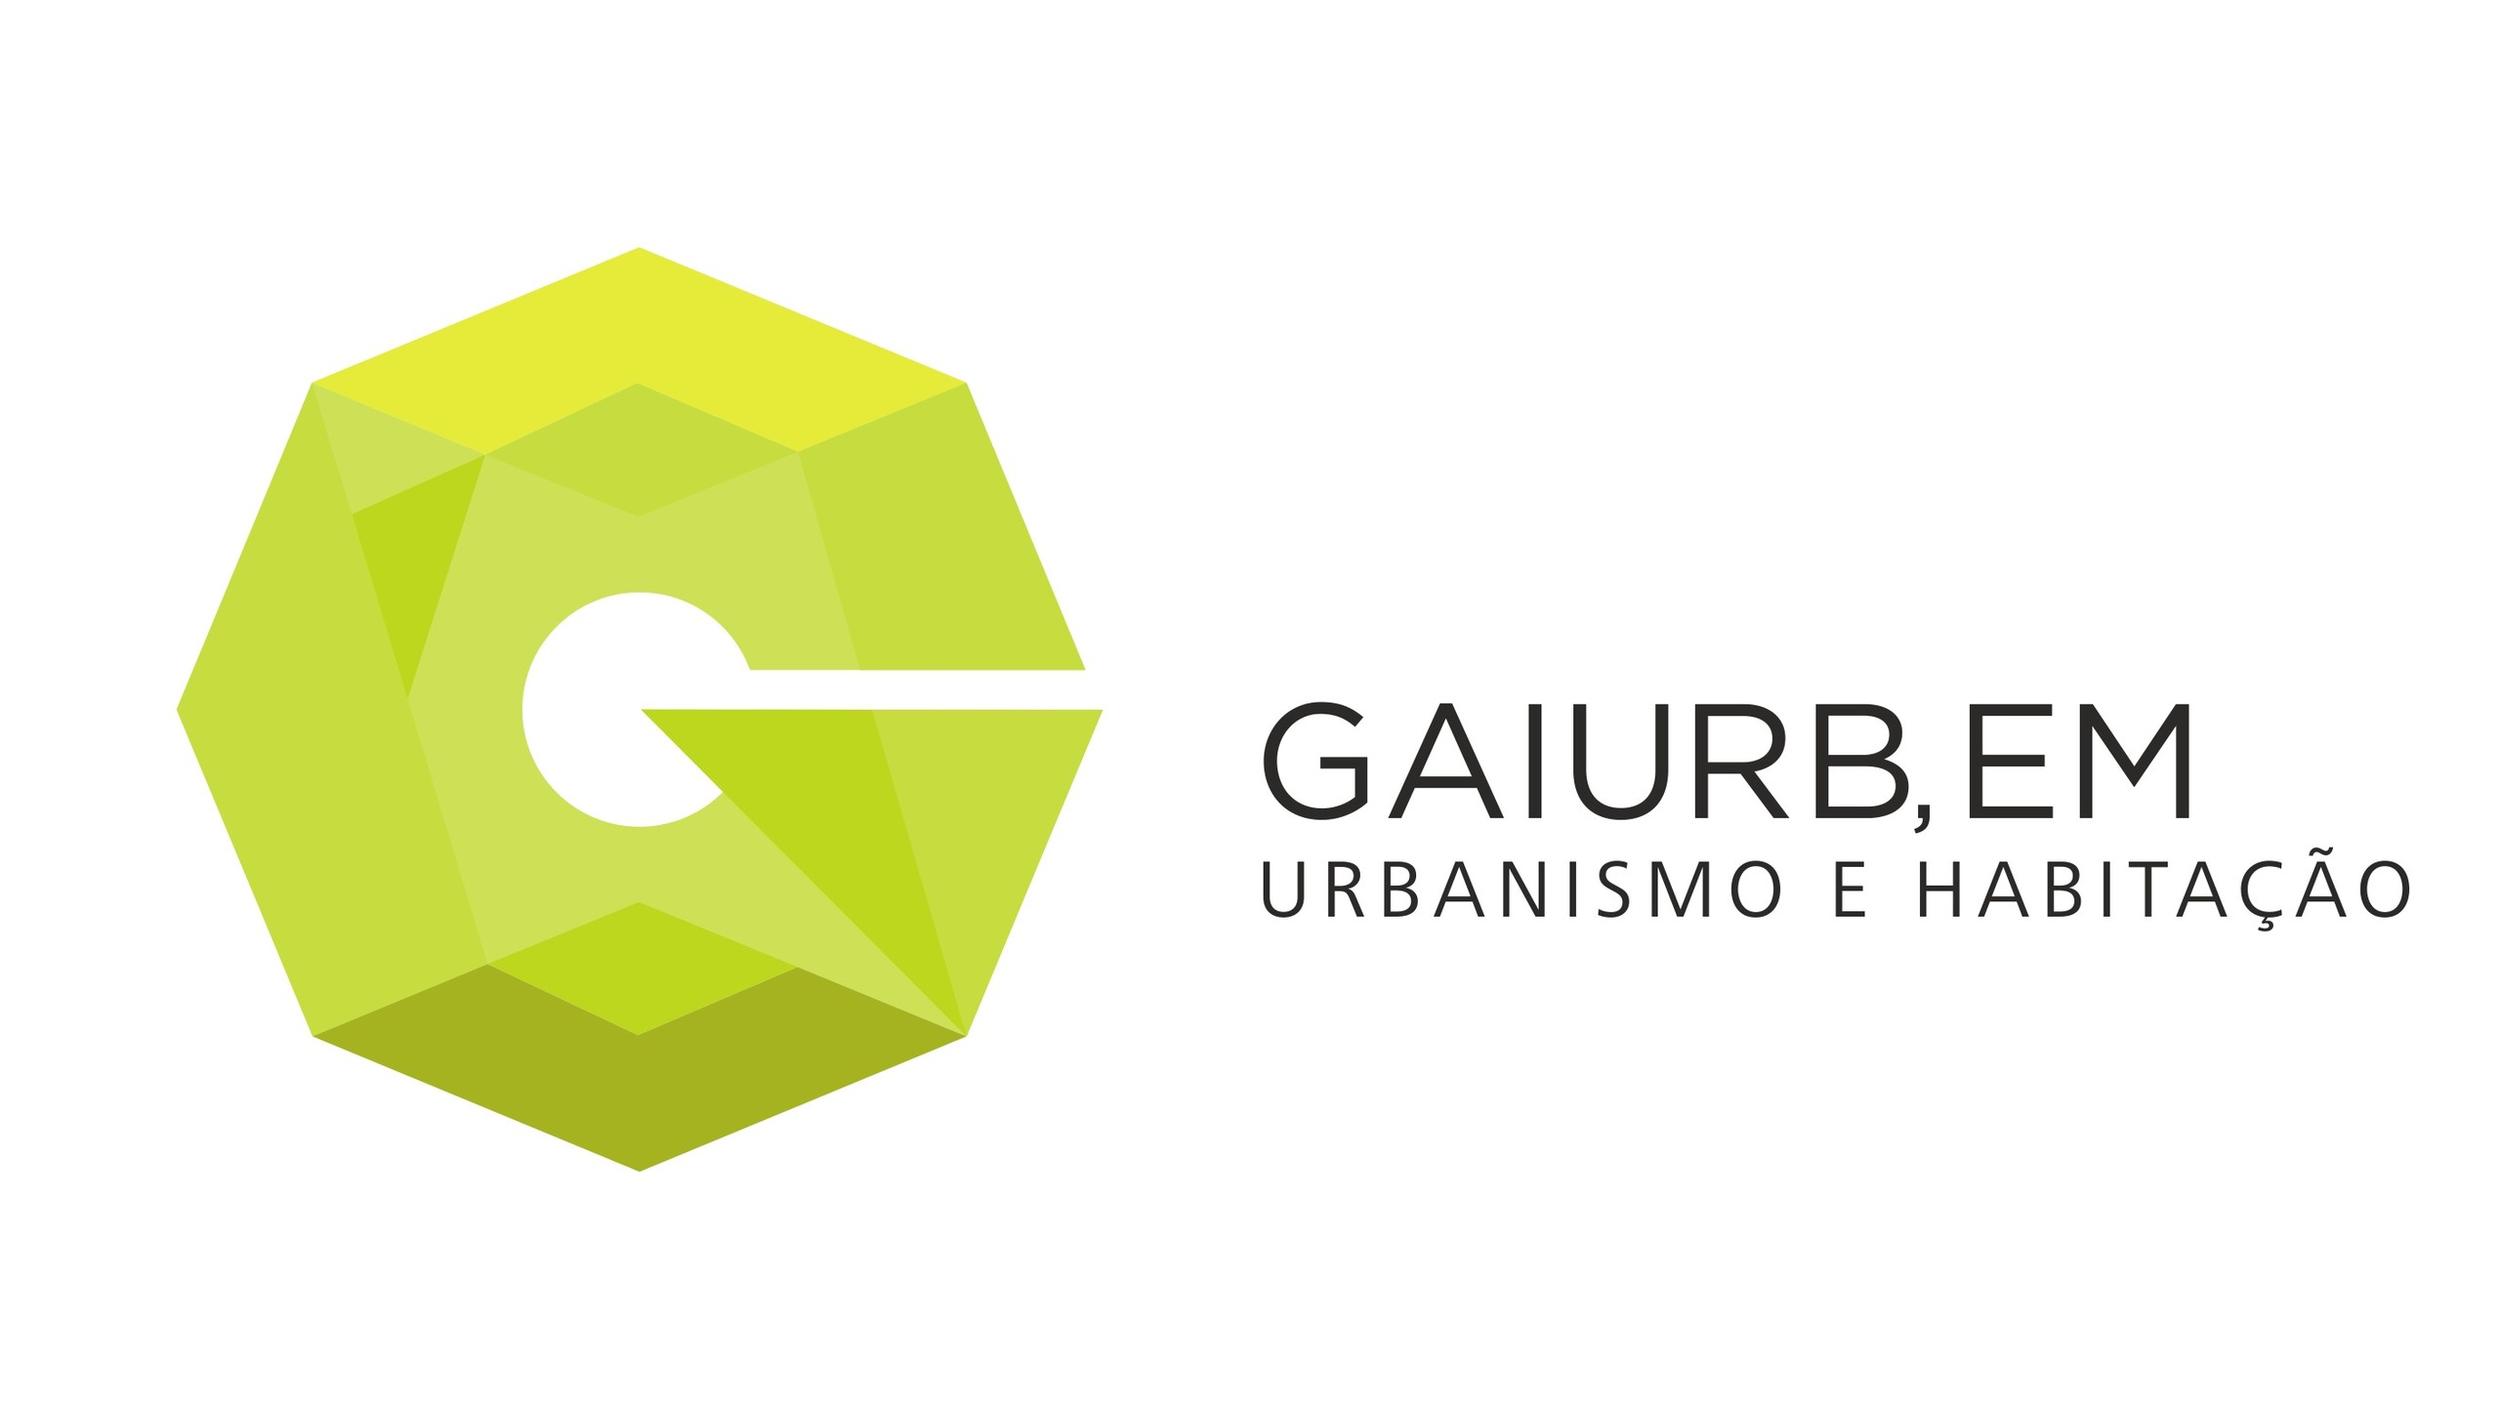 Bem-vindos ao website institucional da Gaiurb!